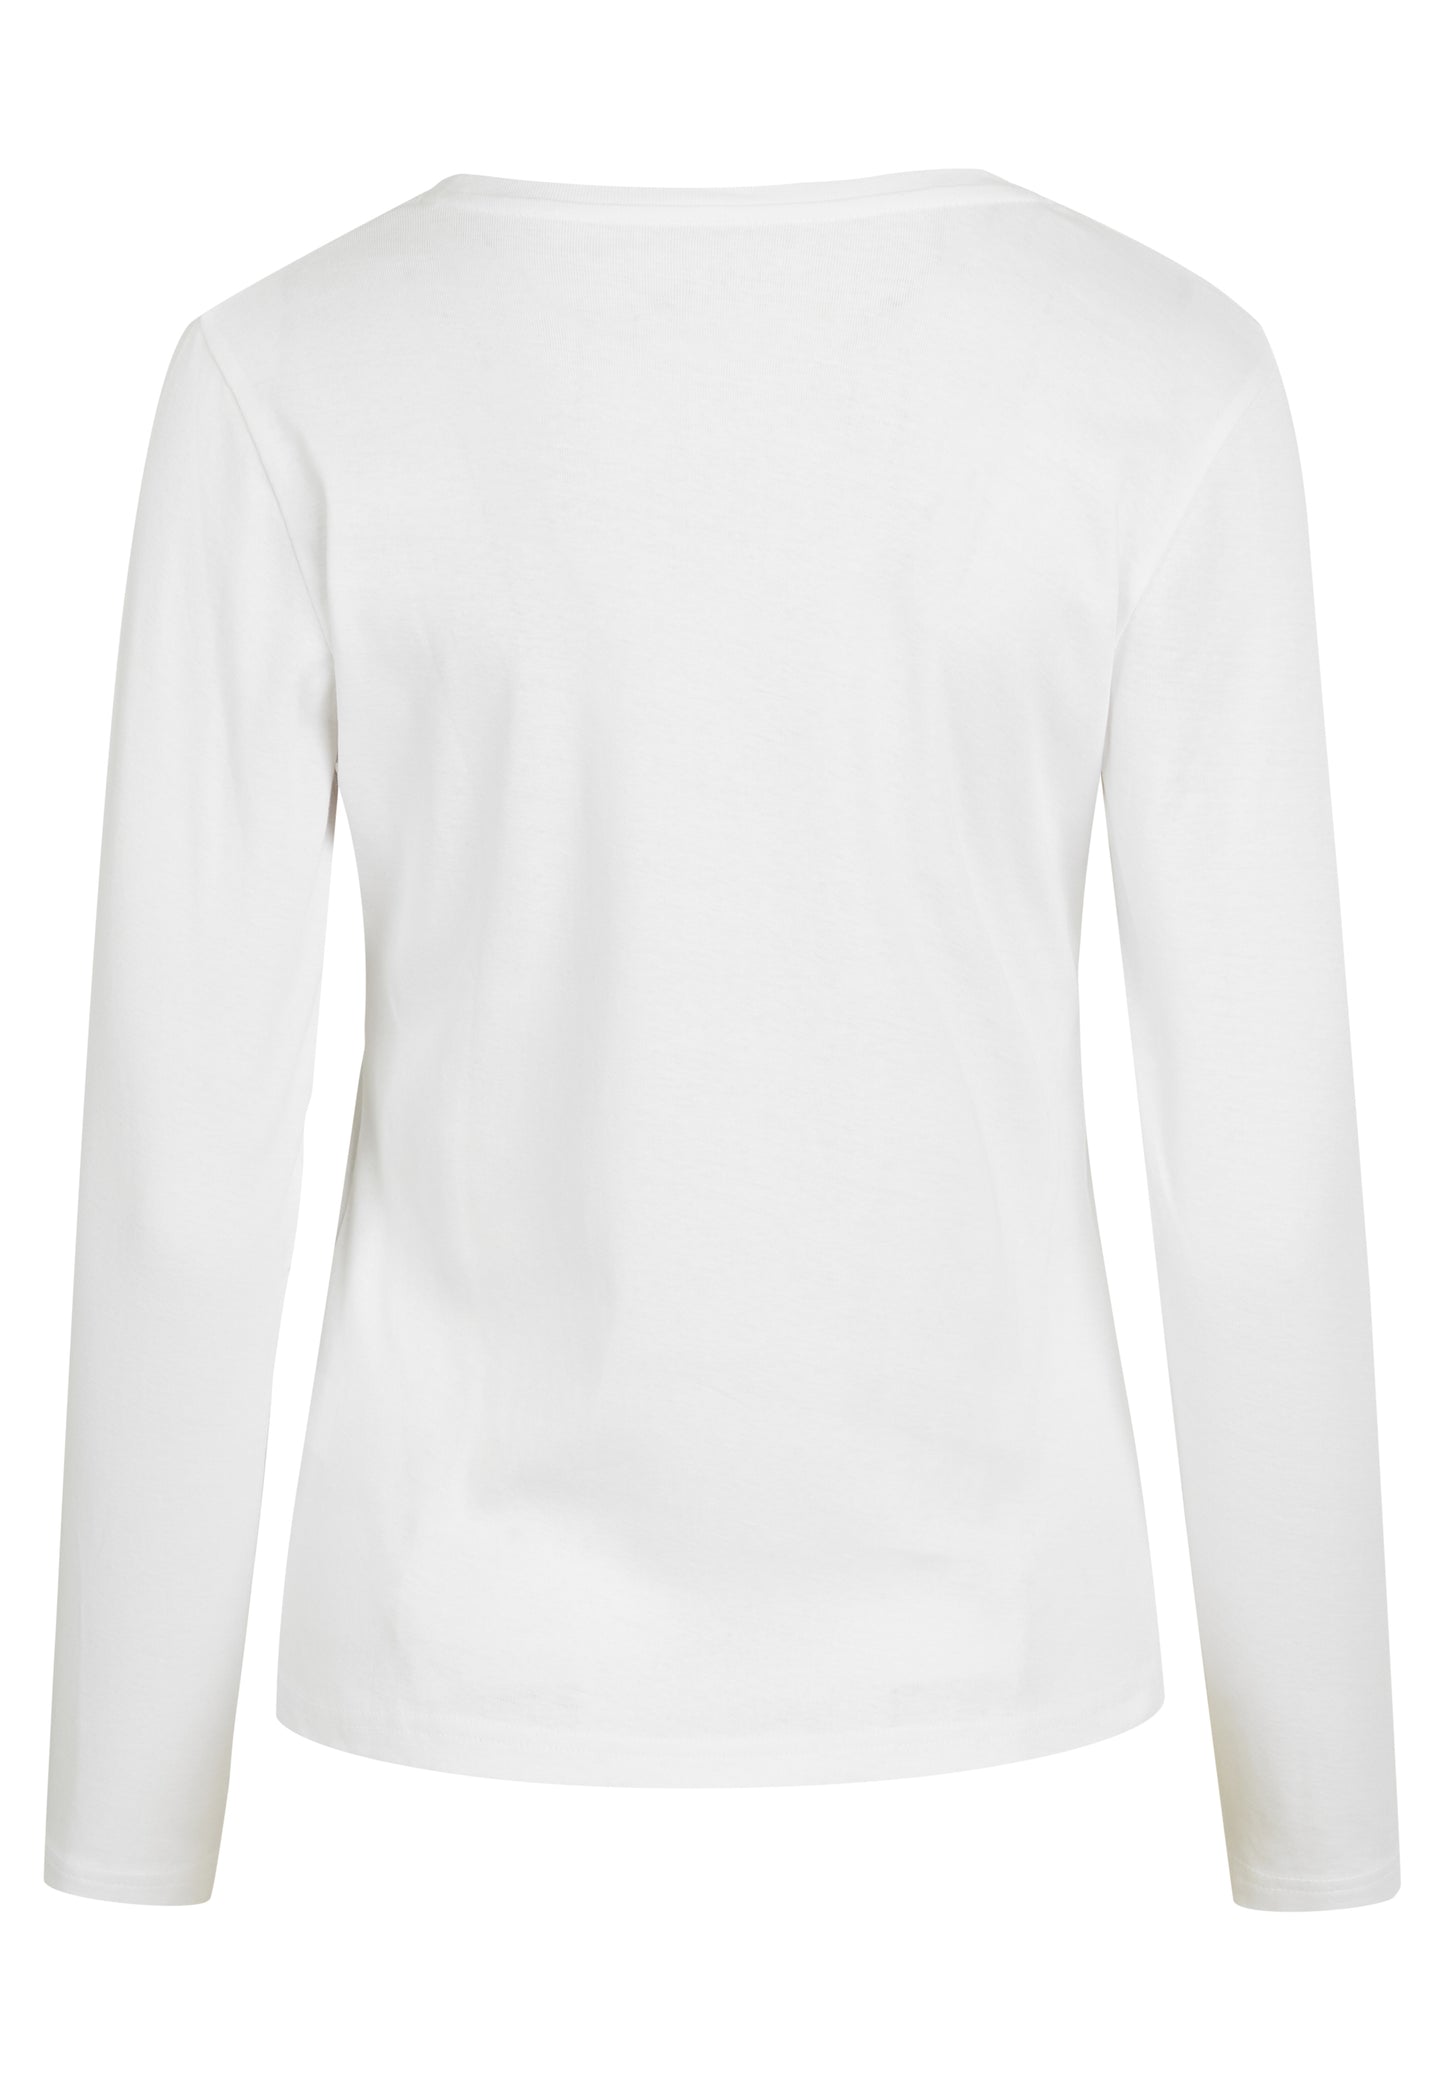 NORVIG Langærmet T-shirt 100% Bomuld til kvinder hvid